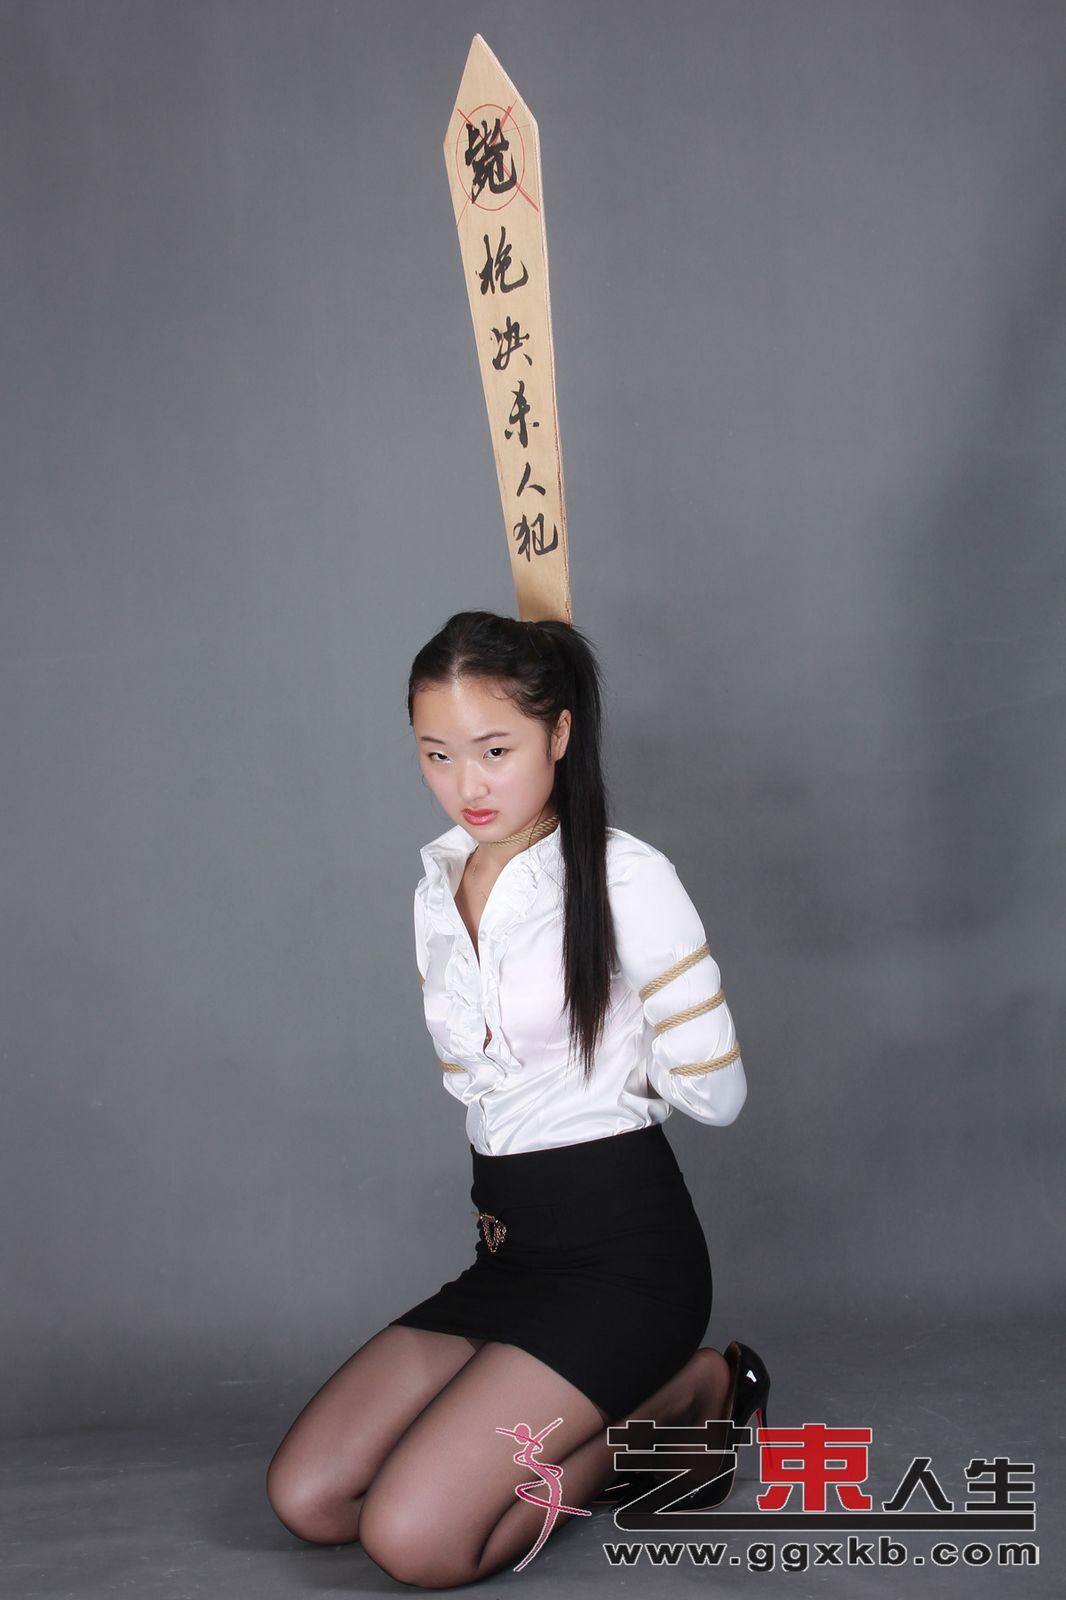 Chinese Art Rope Life 22